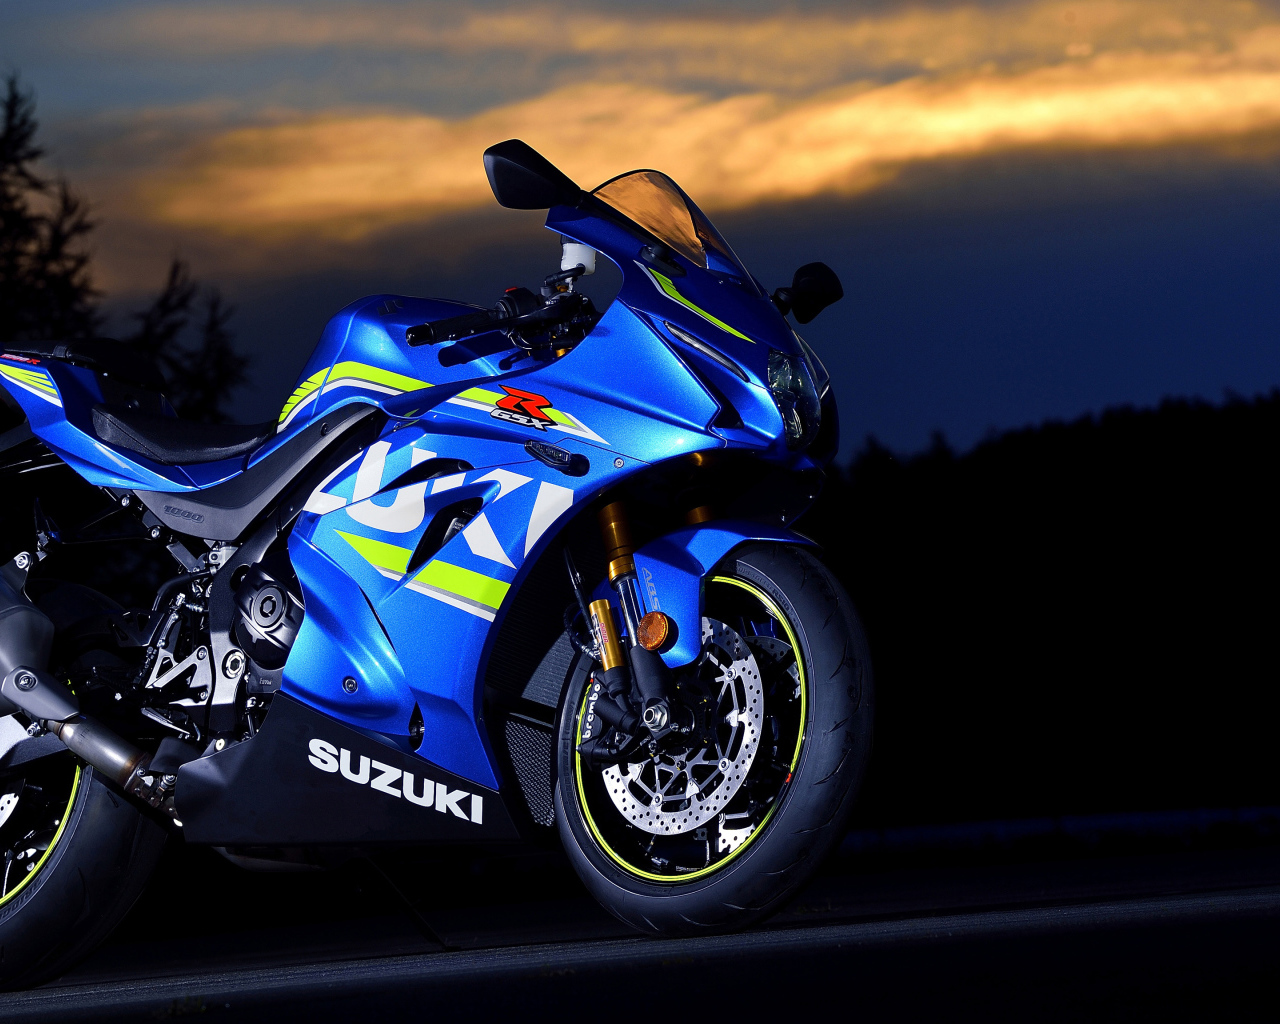 Suzuki GSX-R1000R motorcycle